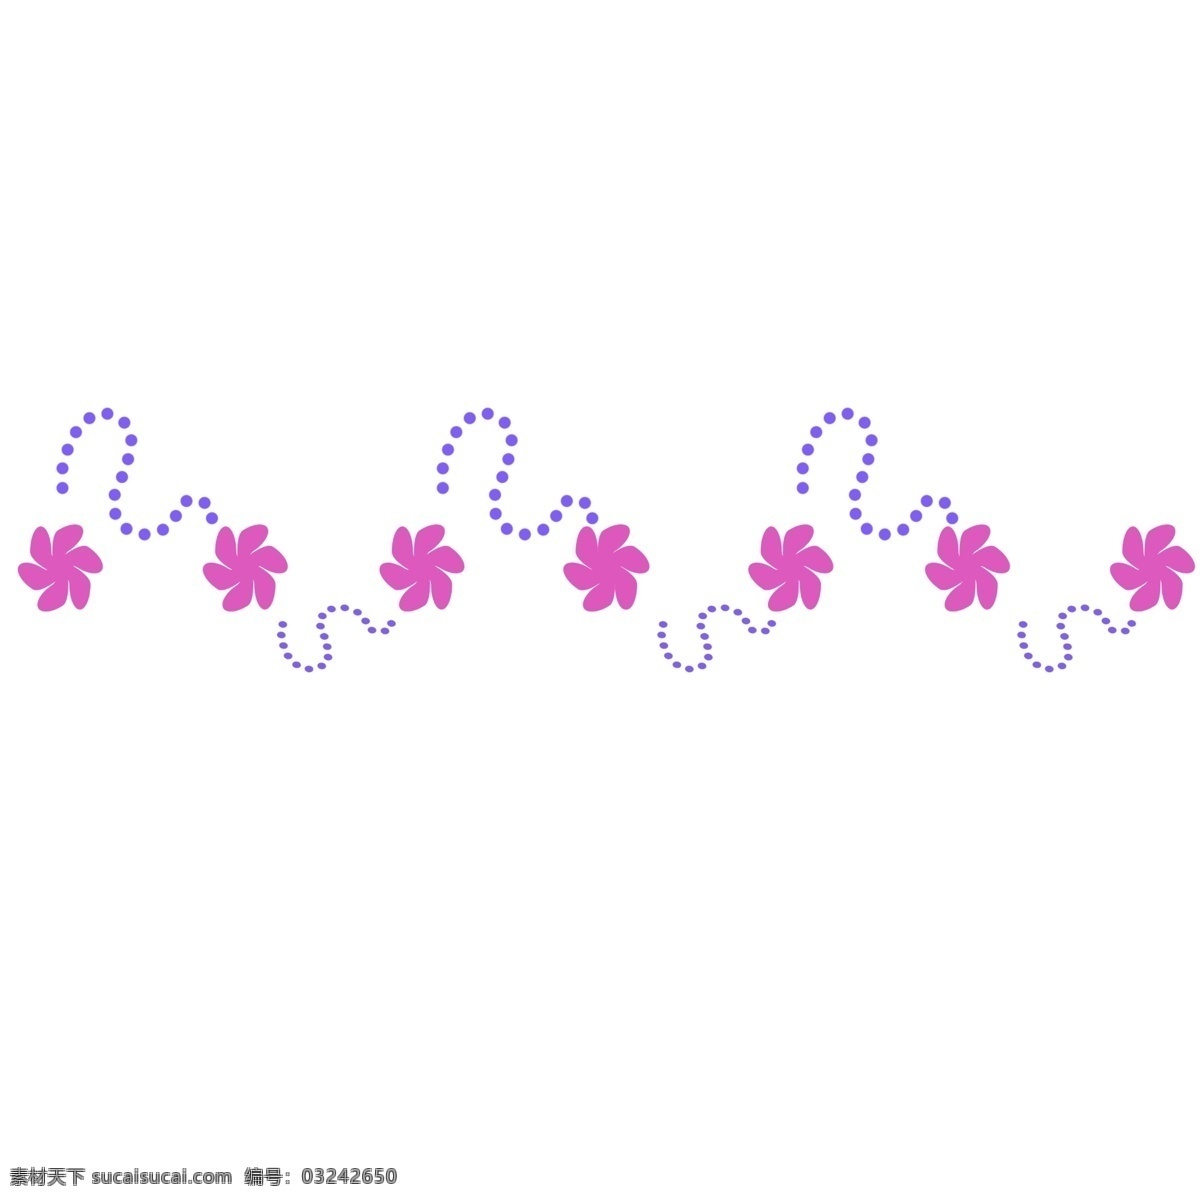 紫色 虚线 分割线 插画 花朵分割线 植物 分割线插画 分割线插图 紫色分割线